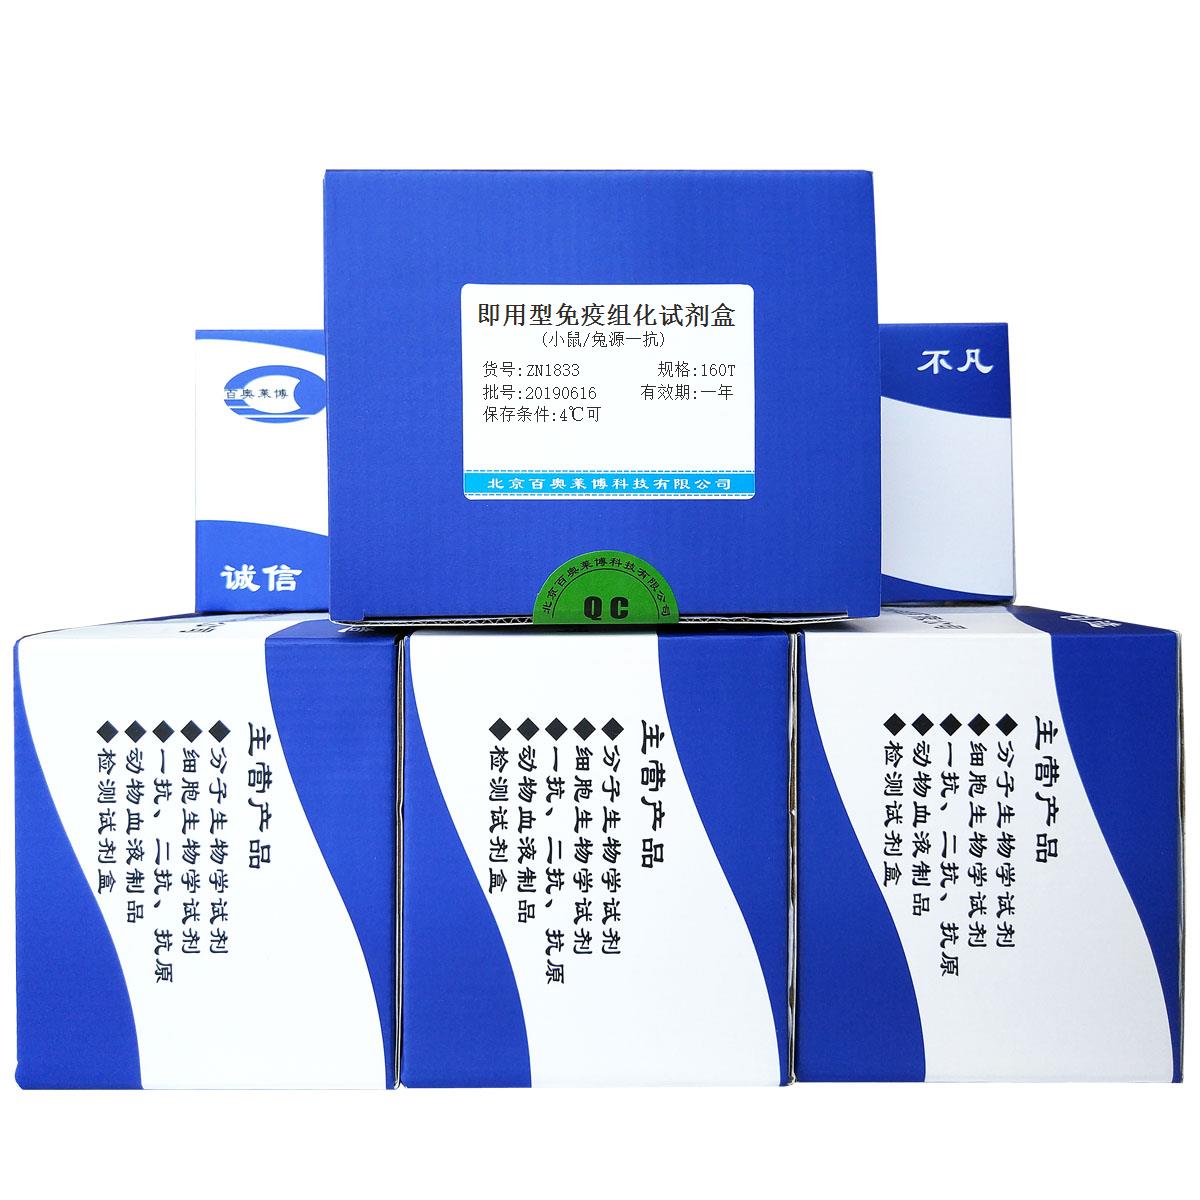 即用型免疫组化试剂盒(小鼠/兔源一抗)北京现货